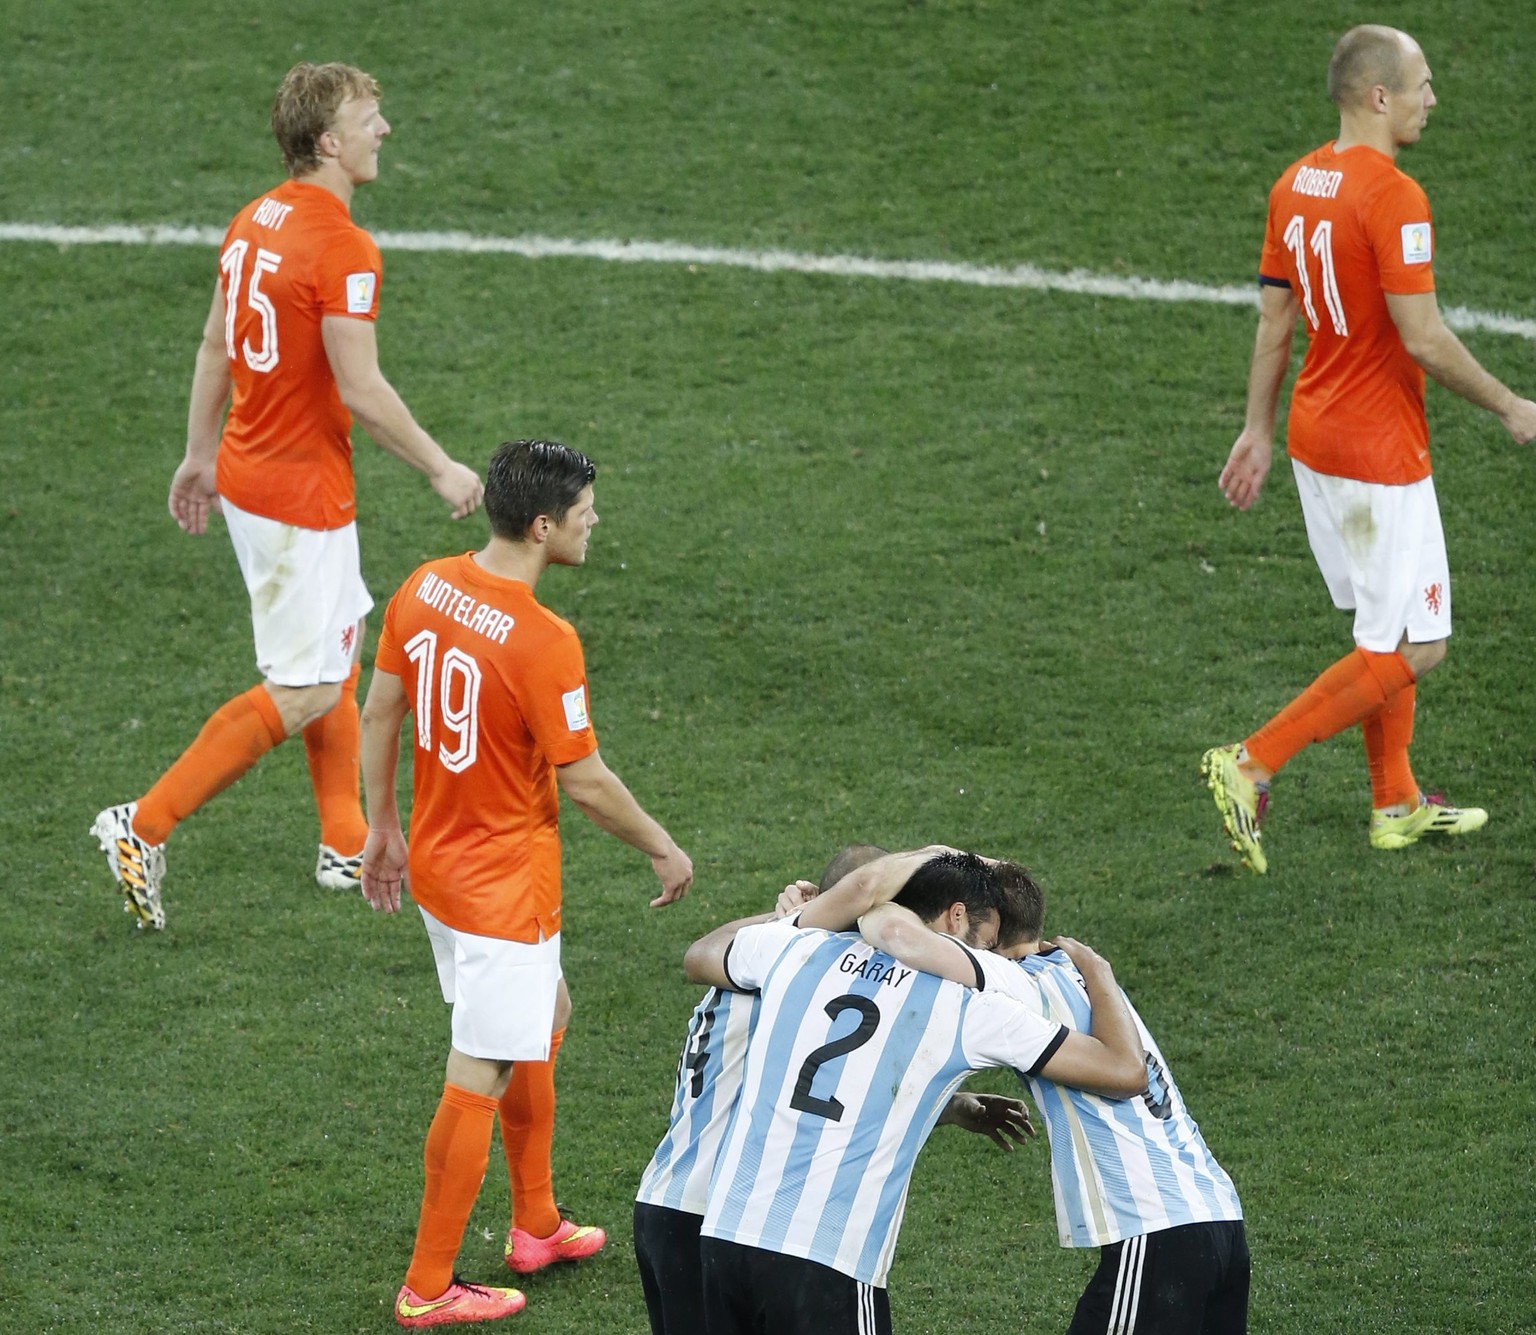 Hellblauer Jubel, oranger Frust: Argentinien eliminiert Holland, zieht in den WM-Final ein.